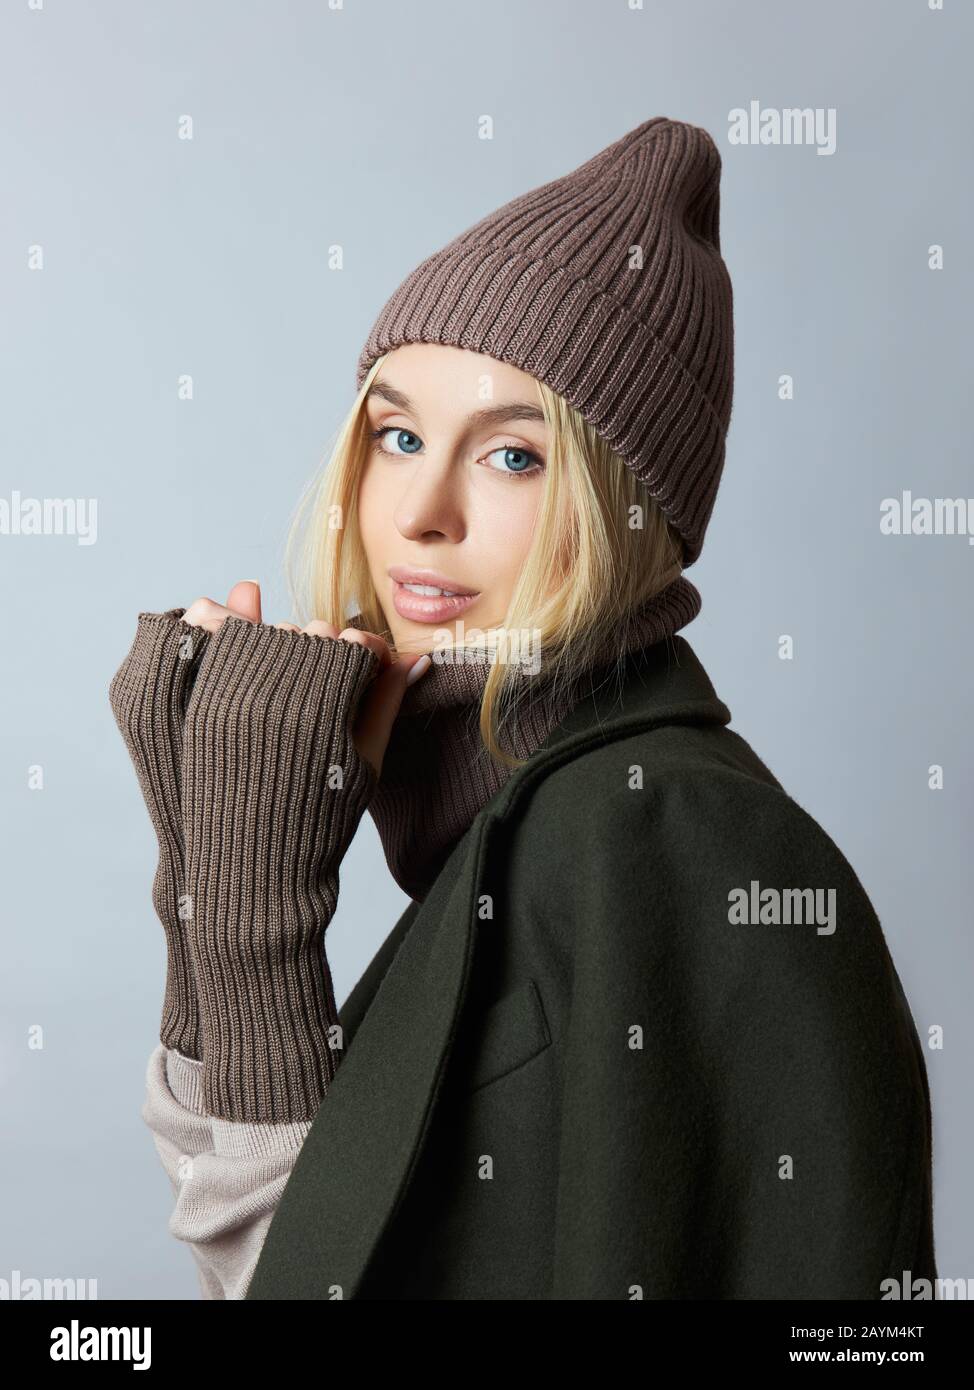 Frau im Mantel, Federkleidung, ein Snood-Schal, ein Hut und Handschuhe. Das  Mädchen ist blond mit blauen Augen. Warme Kleidung für kaltes  Frühlingswetter Stockfotografie - Alamy